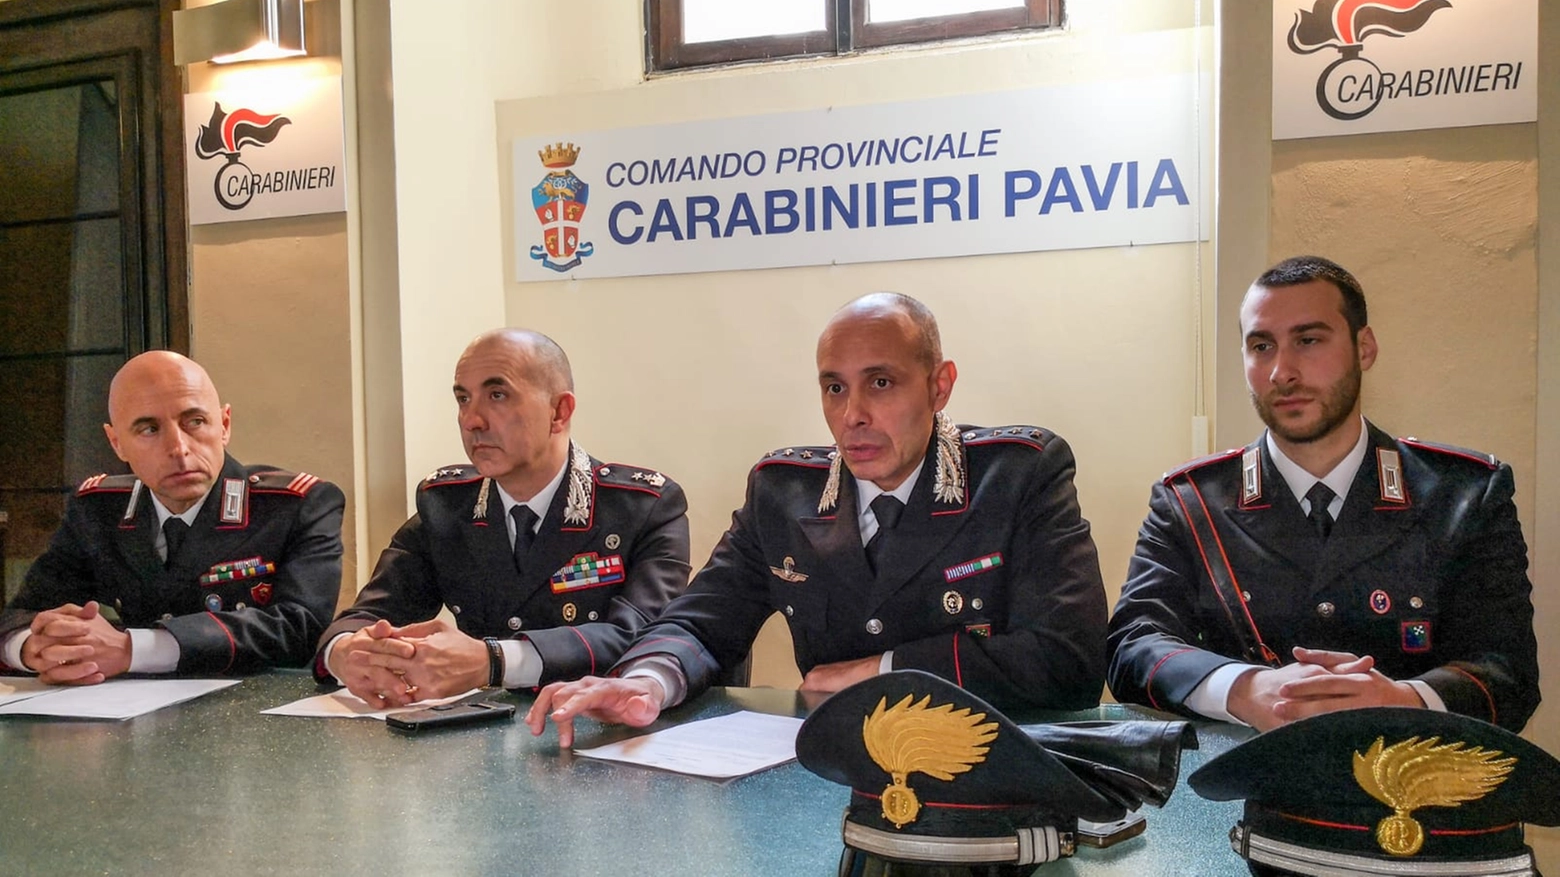 La conferenza stampa dei carabinieri a Pavia